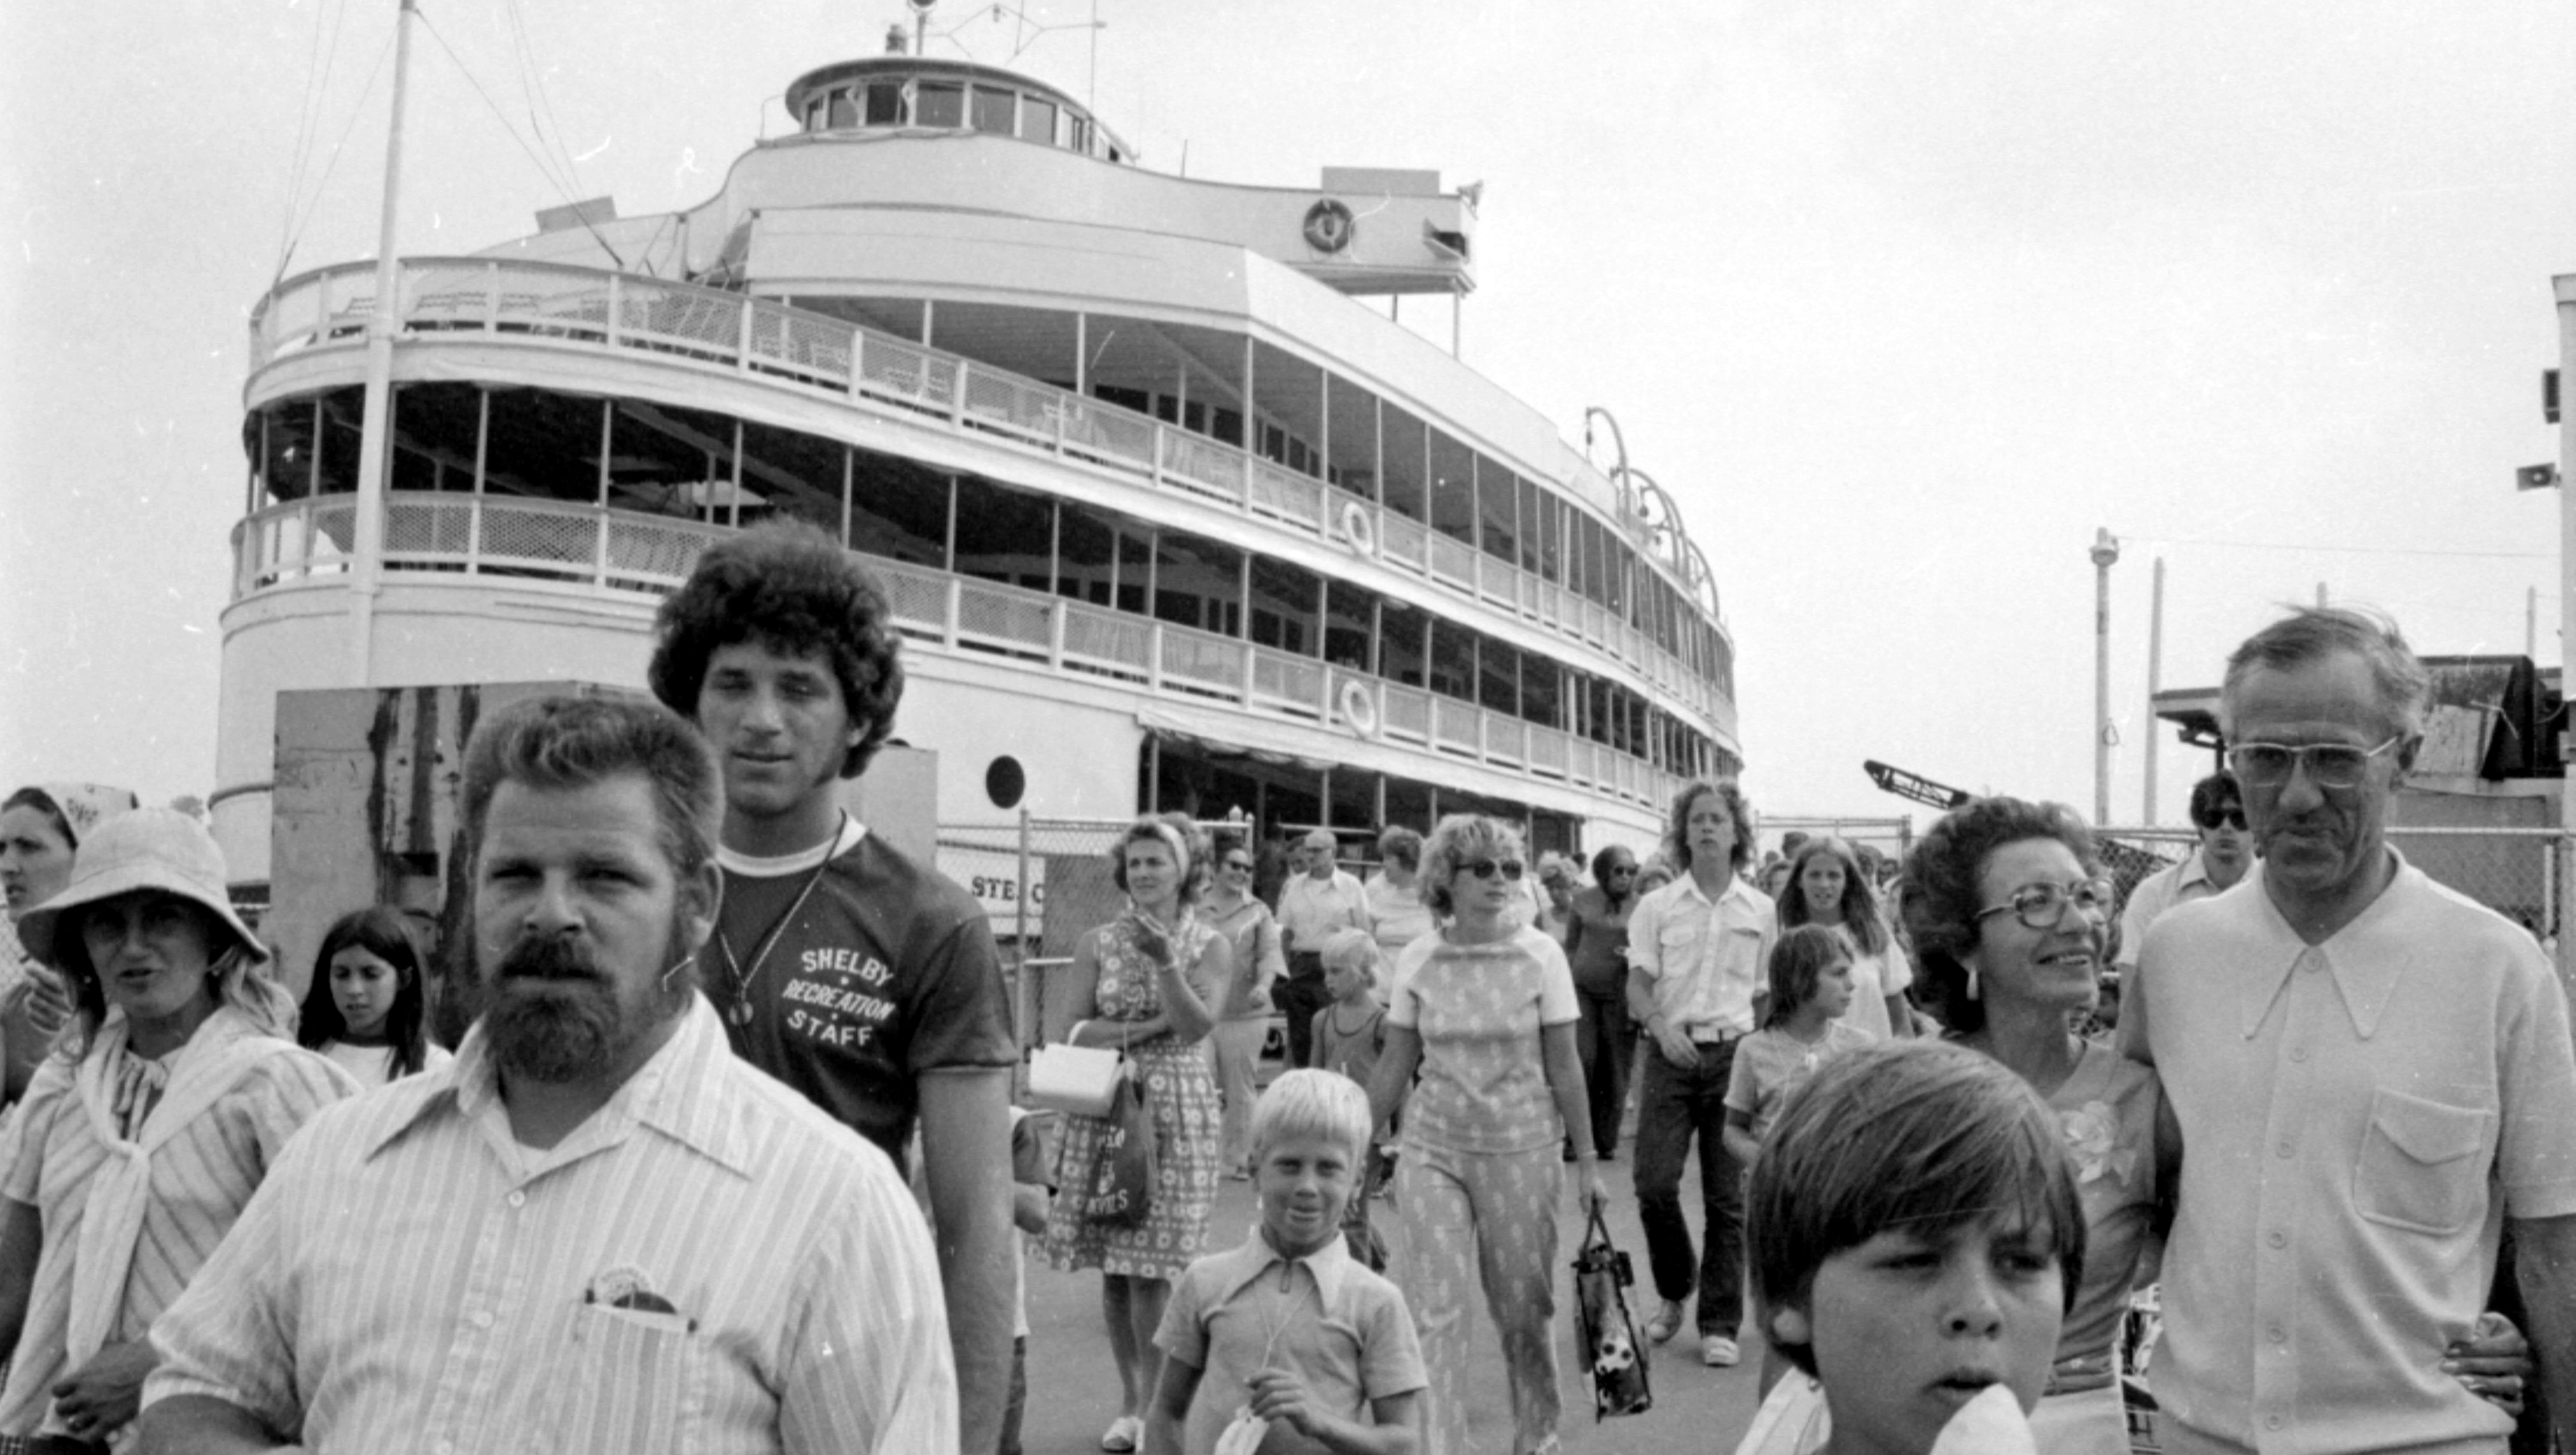 Passengers disembark from a Boblo boat, circa 1970s.